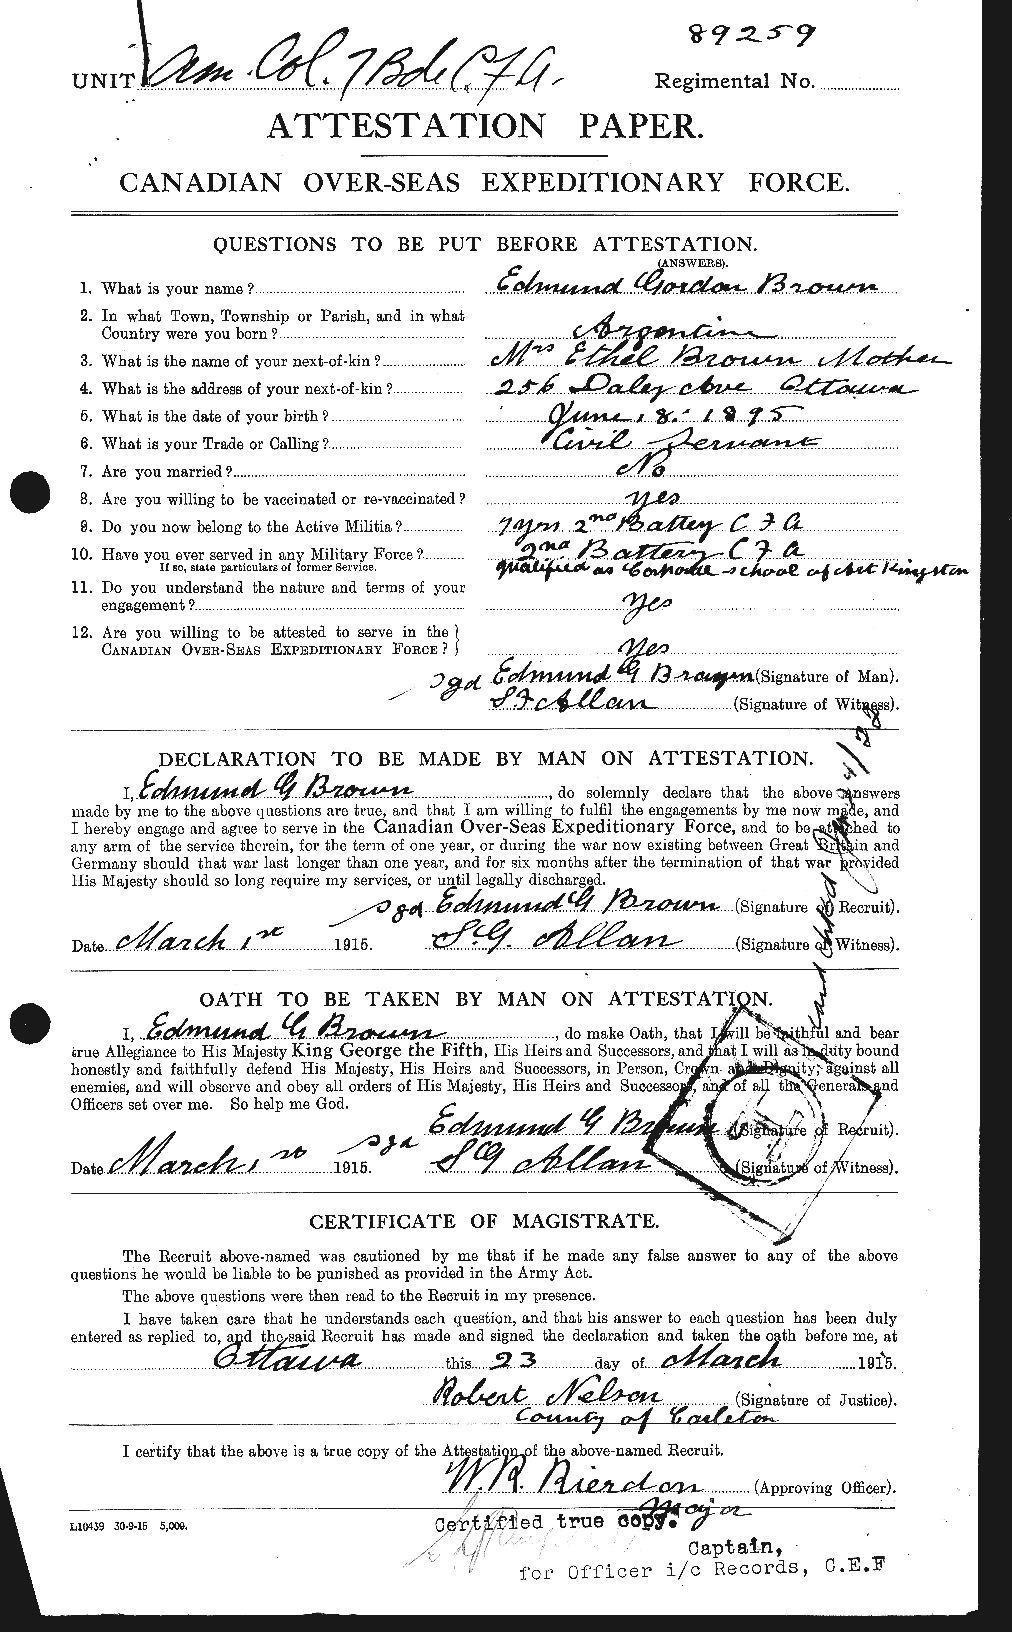 Dossiers du Personnel de la Première Guerre mondiale - CEC 263328a